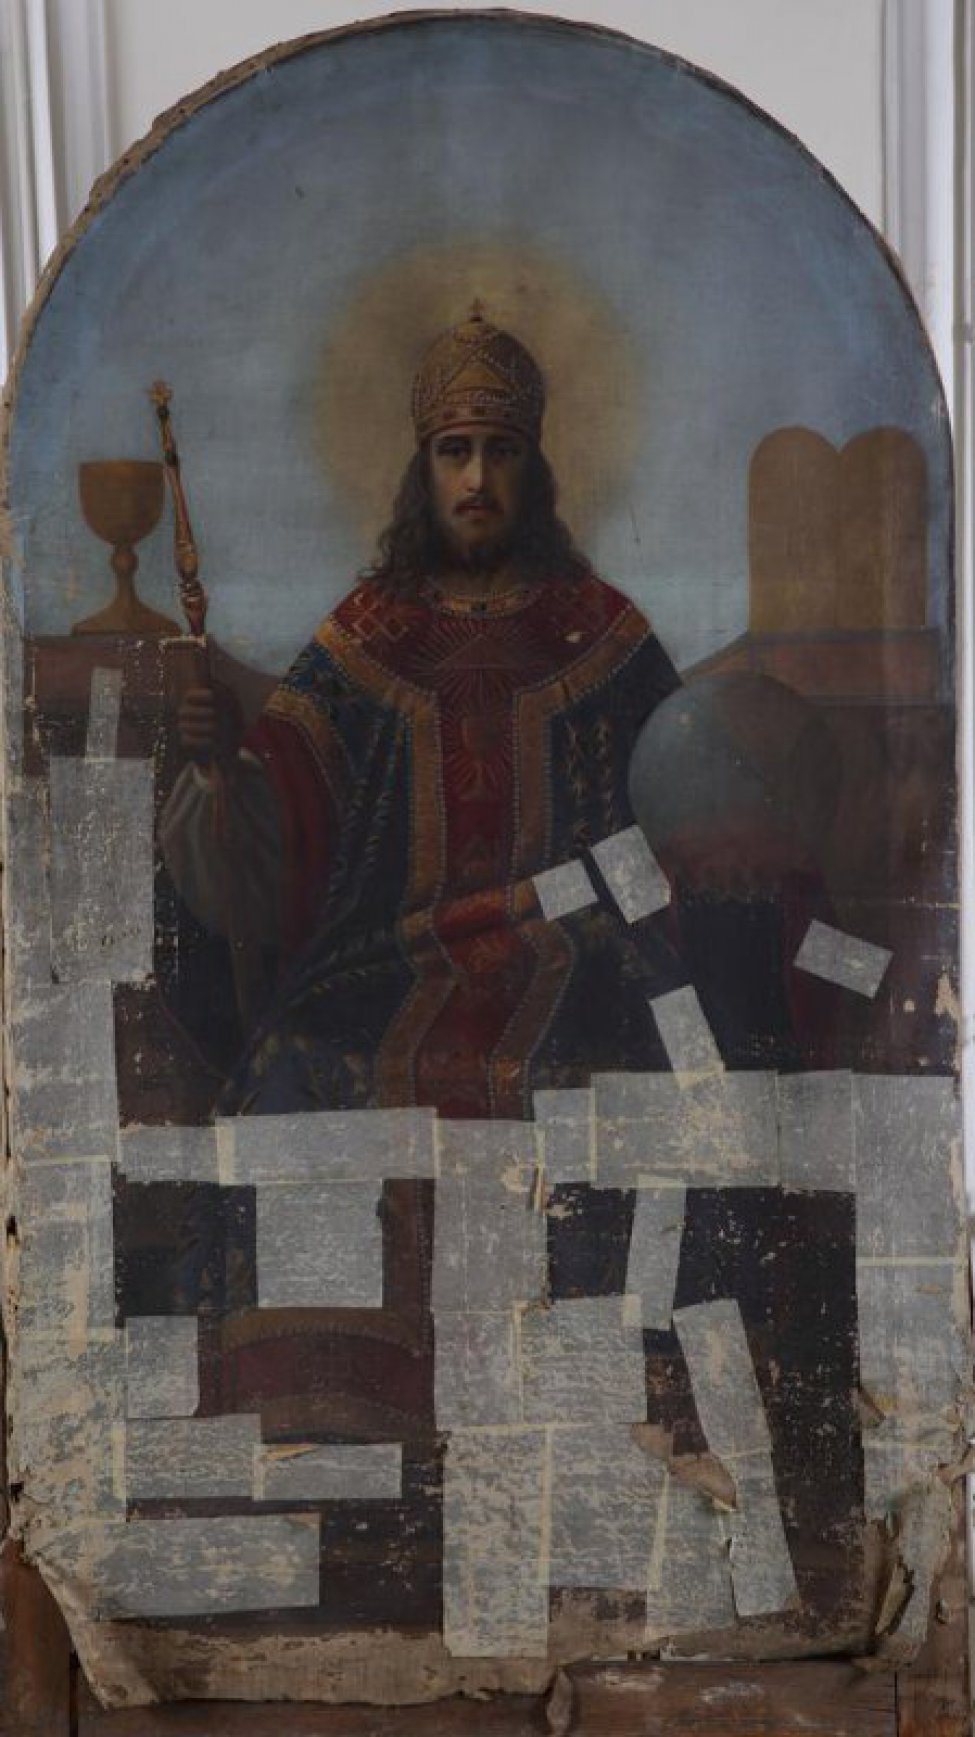 Изображает молодого Христа, сидящего на троне со скипетром в одной руке и со сферой в другой руке. Верх полукругом.